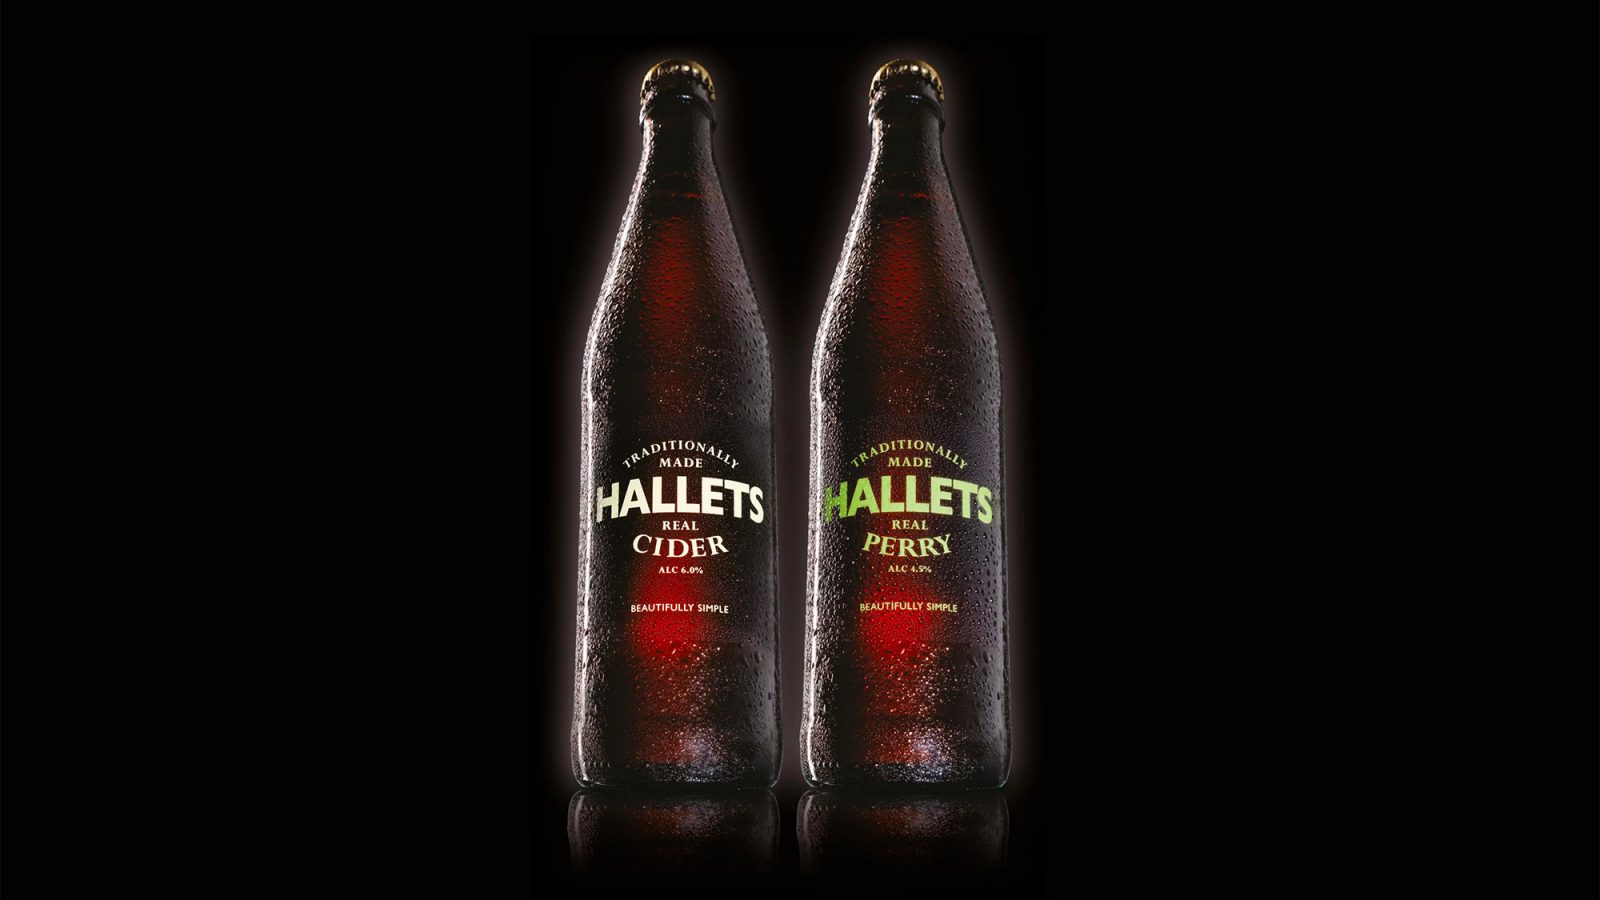 Two hallets branded bottles design by celf creative